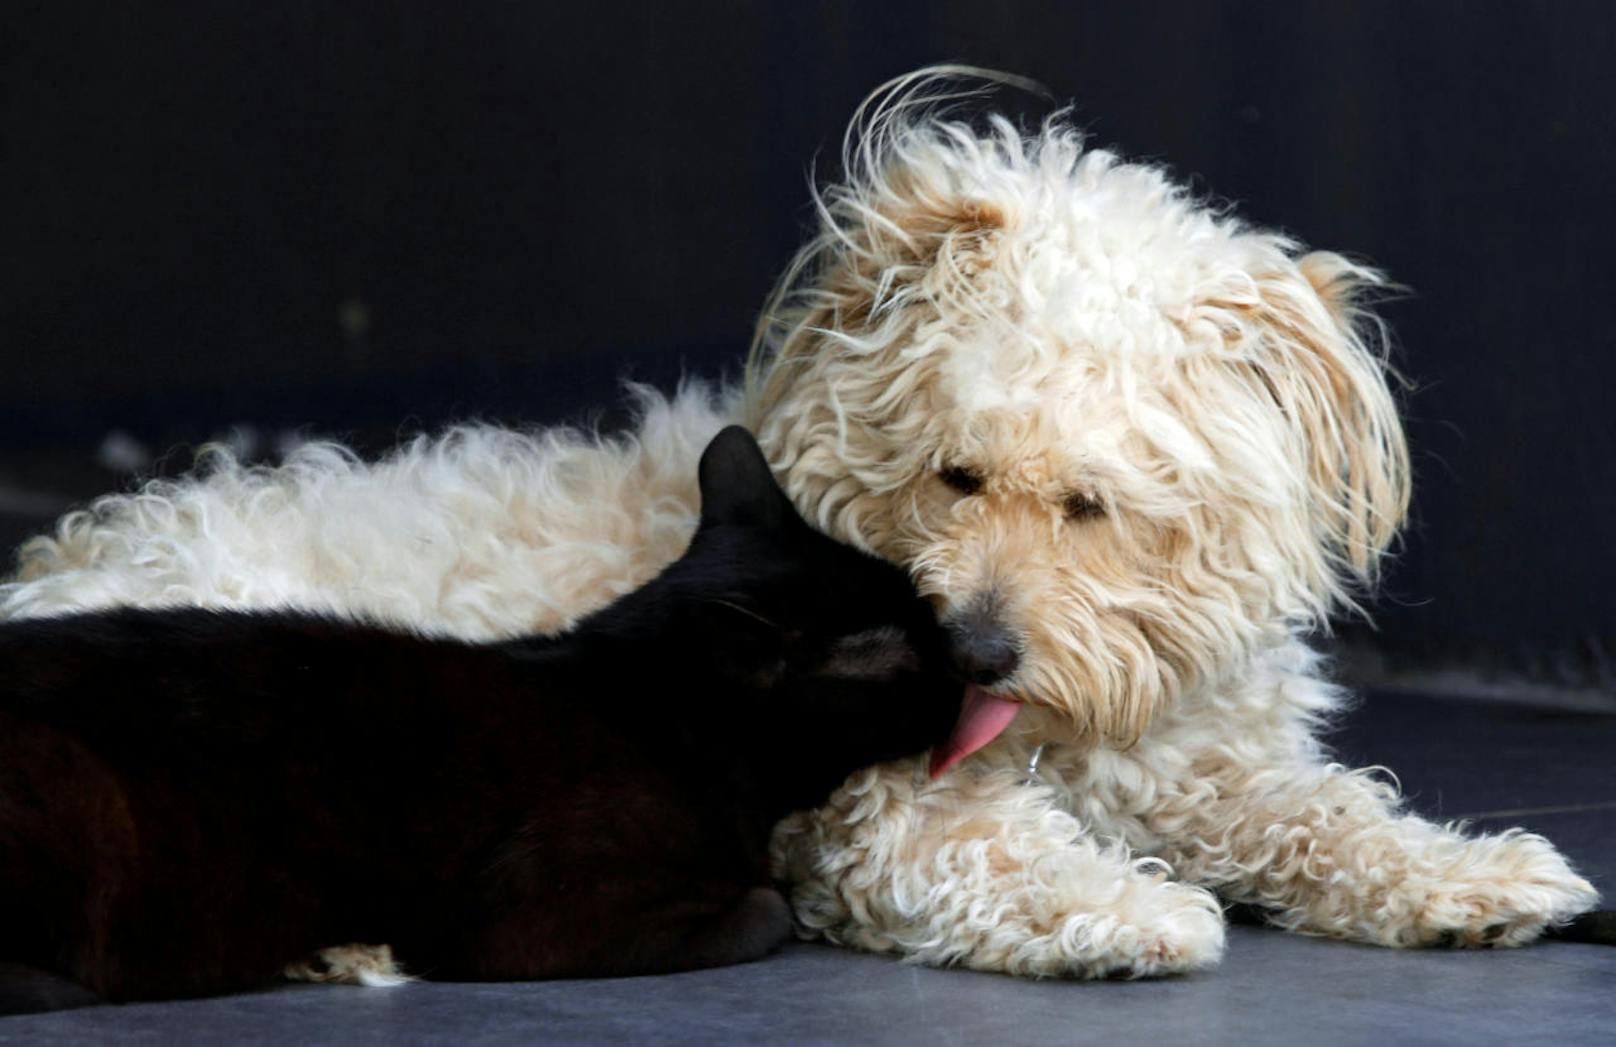 Ziemlich beste Freunde: Kater "Lucky" und Hund "Casper" leben in dem libanesischen Dorf Khia unter einem Dach.